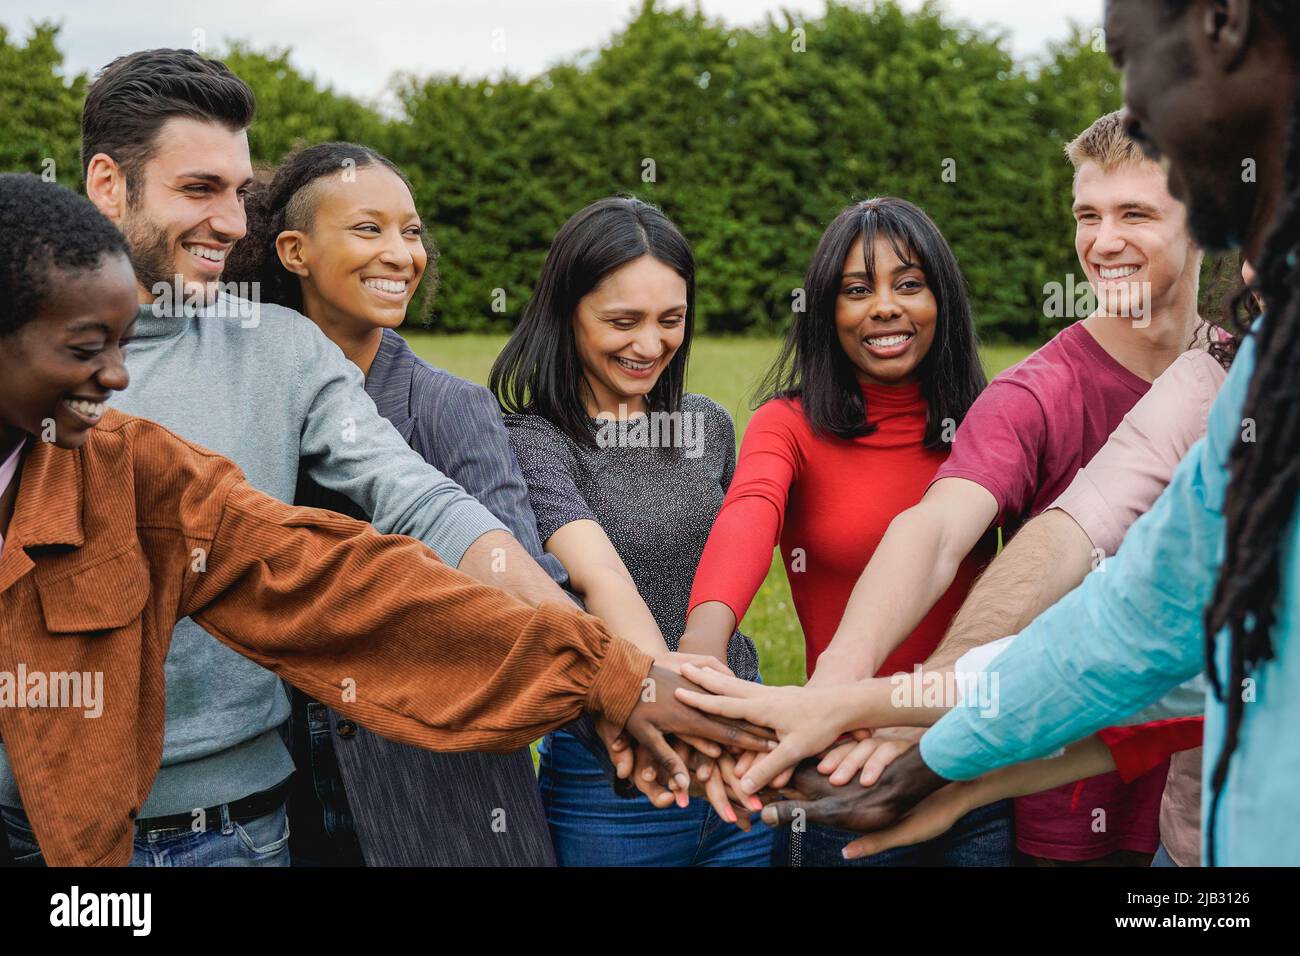 Junge, multiethnische Gruppe von Menschen, die ihre Hände im Freien stapeln - Konzept der Teamwork-Vielfalt und -Einheit Stockfoto